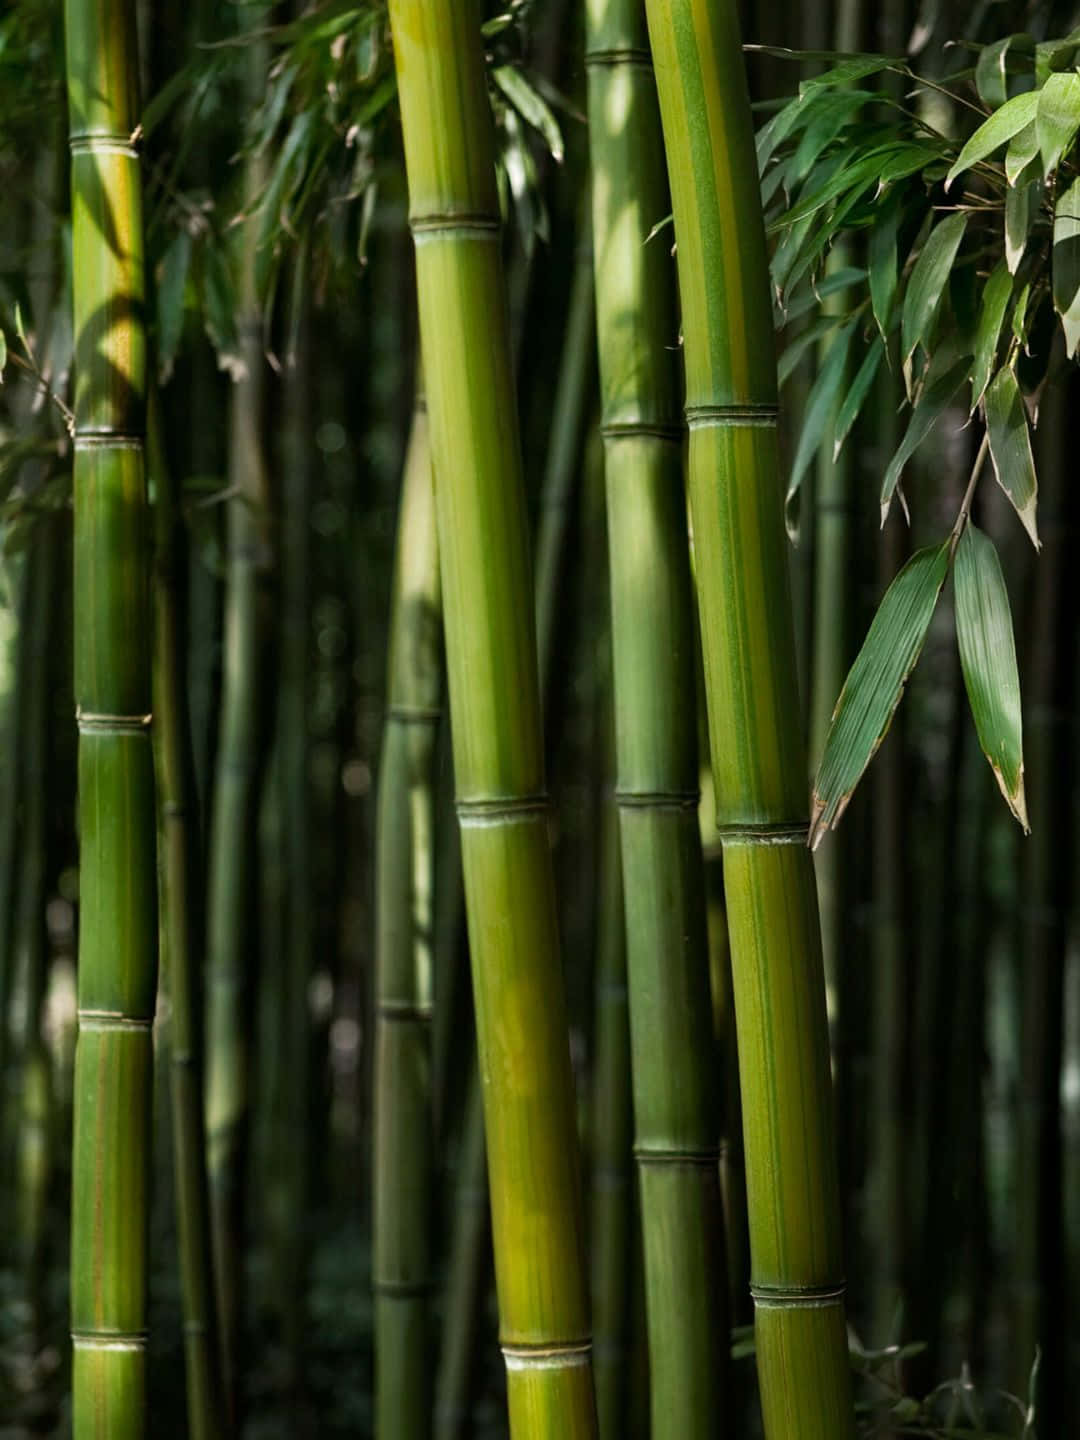 Fondode Pantalla De Bambú En 1440p, Con Tallos Y Hojas De Un Verde Muy Oscuro.